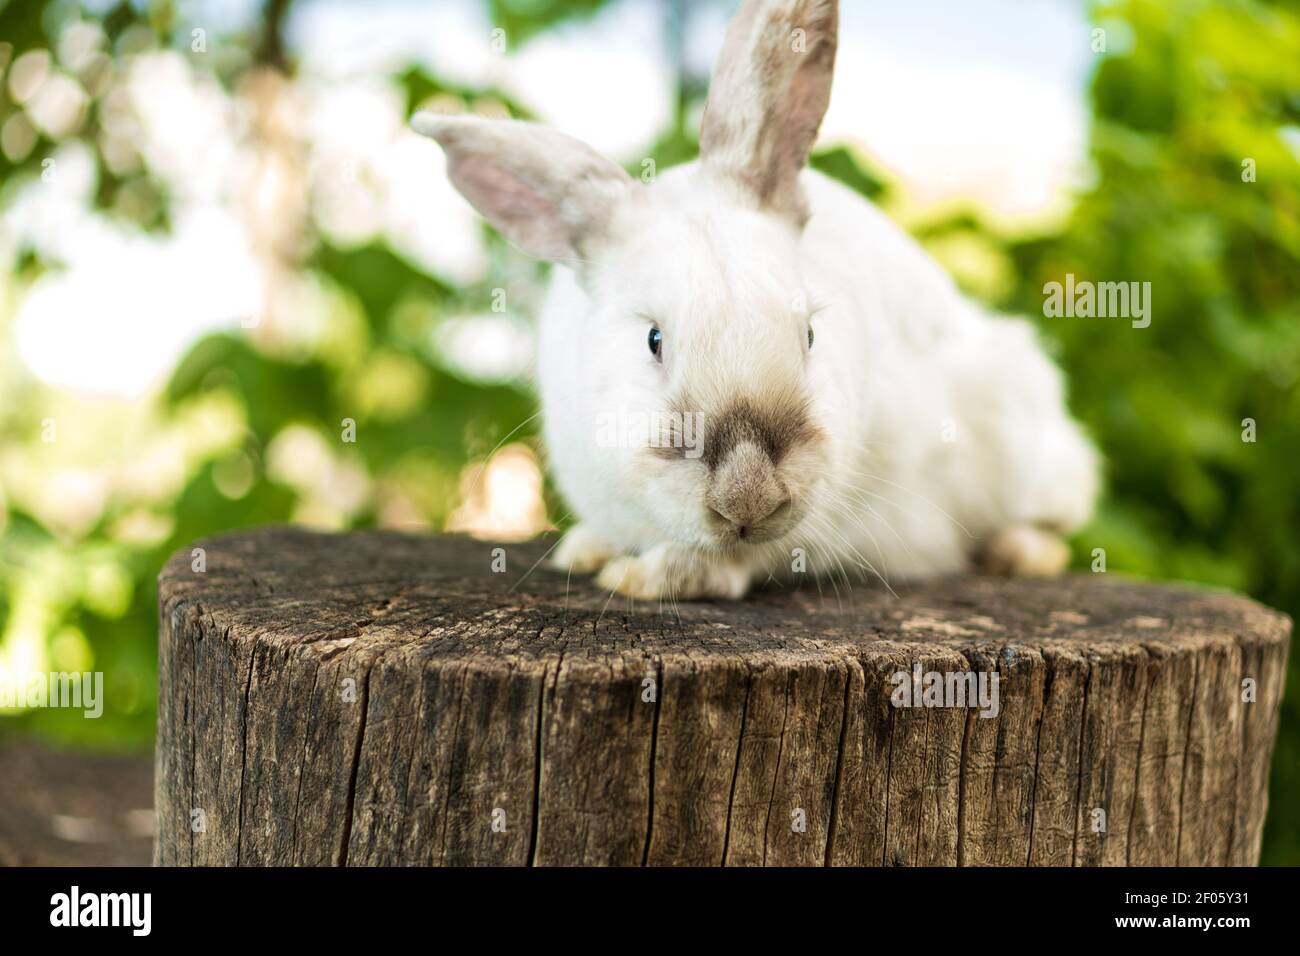 el conejo blanco asustado adulto grande se sienta en el tocón del árbol contra el fondo del césped verde. Liebre en pradera salvaje guacamayos mirar cámara en primavera o verano Foto de stock